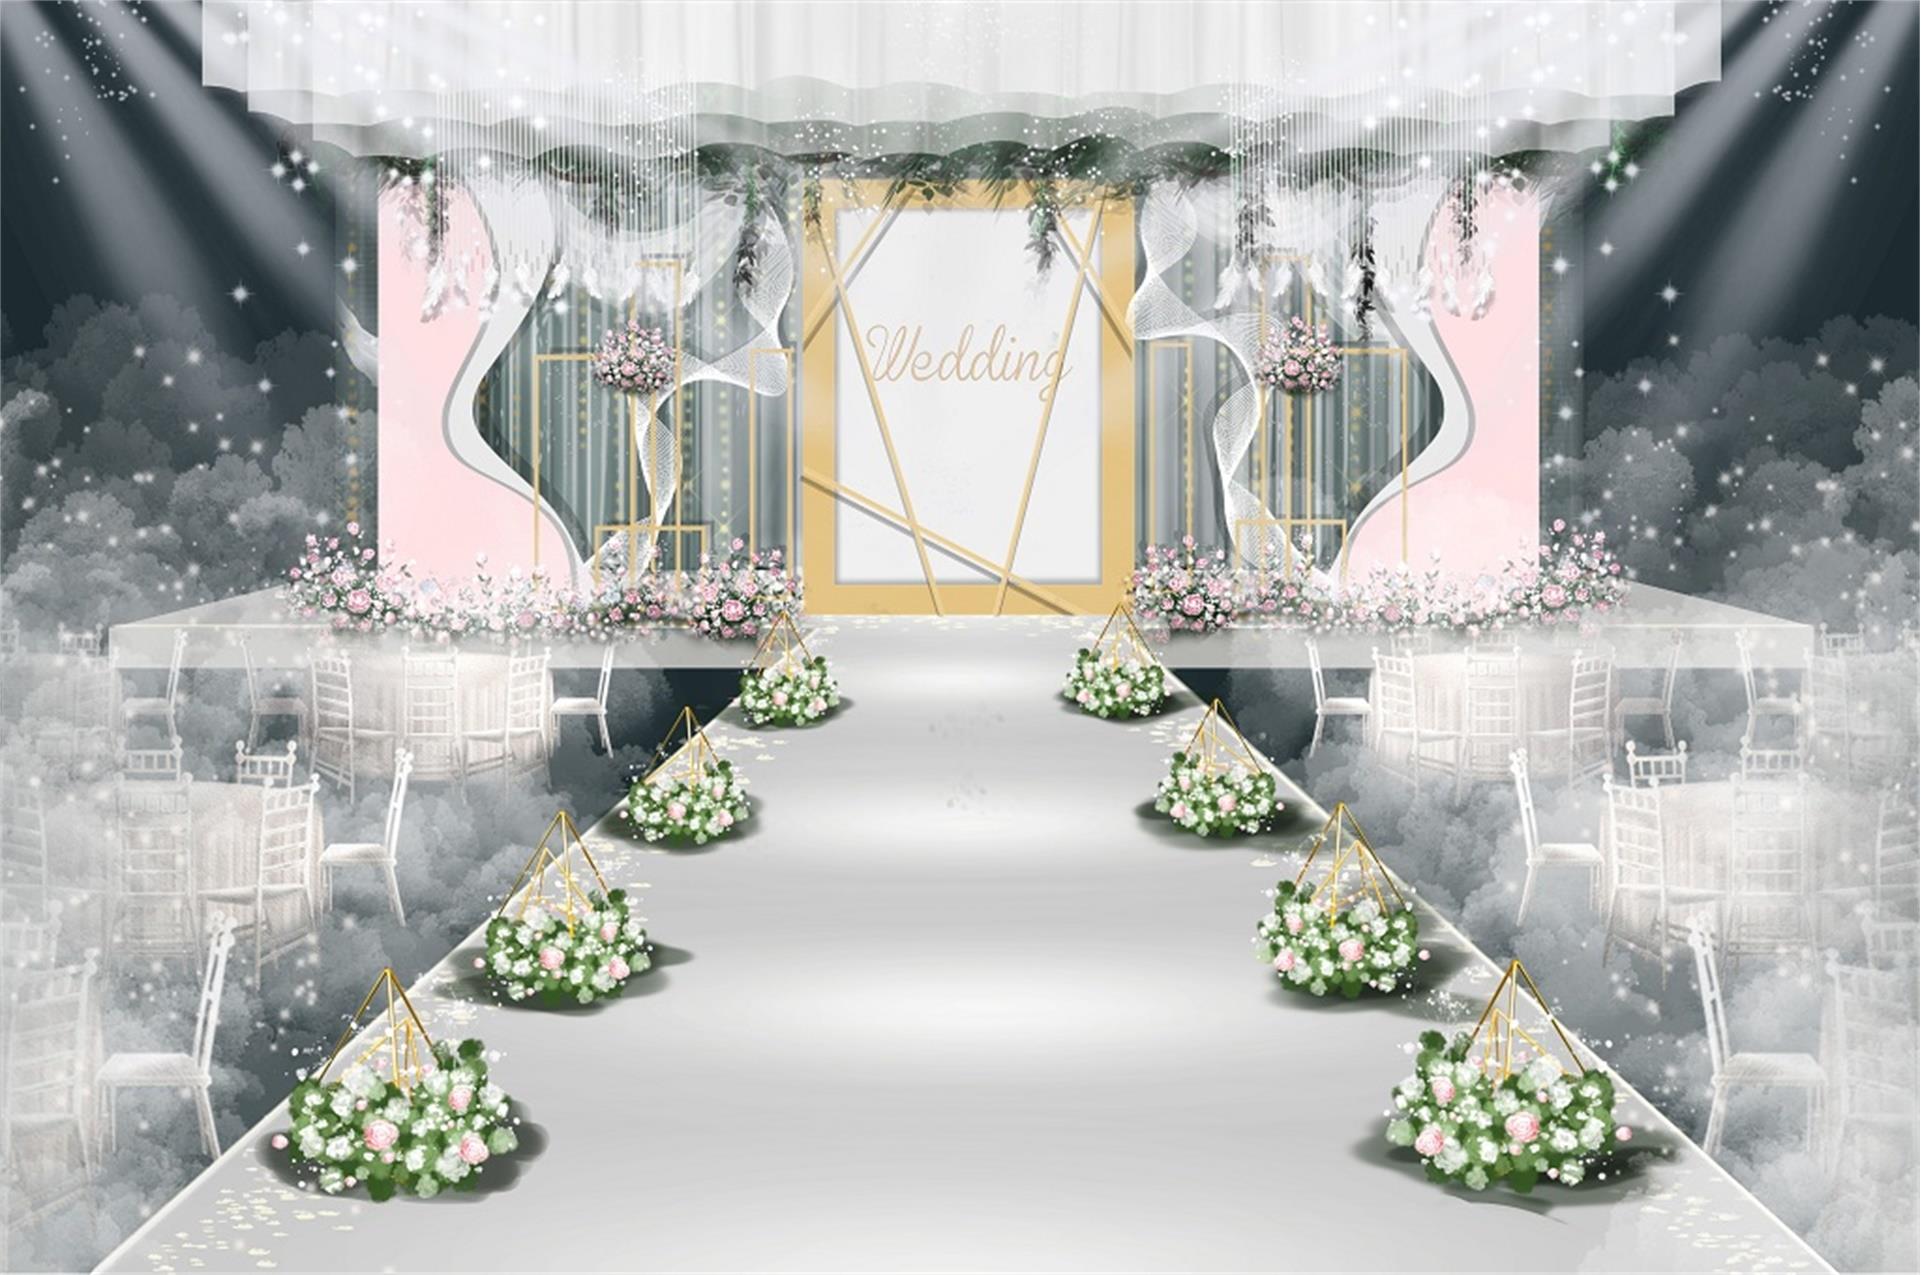 欧式婚礼效果图 白粉色系 白色纱幔打底